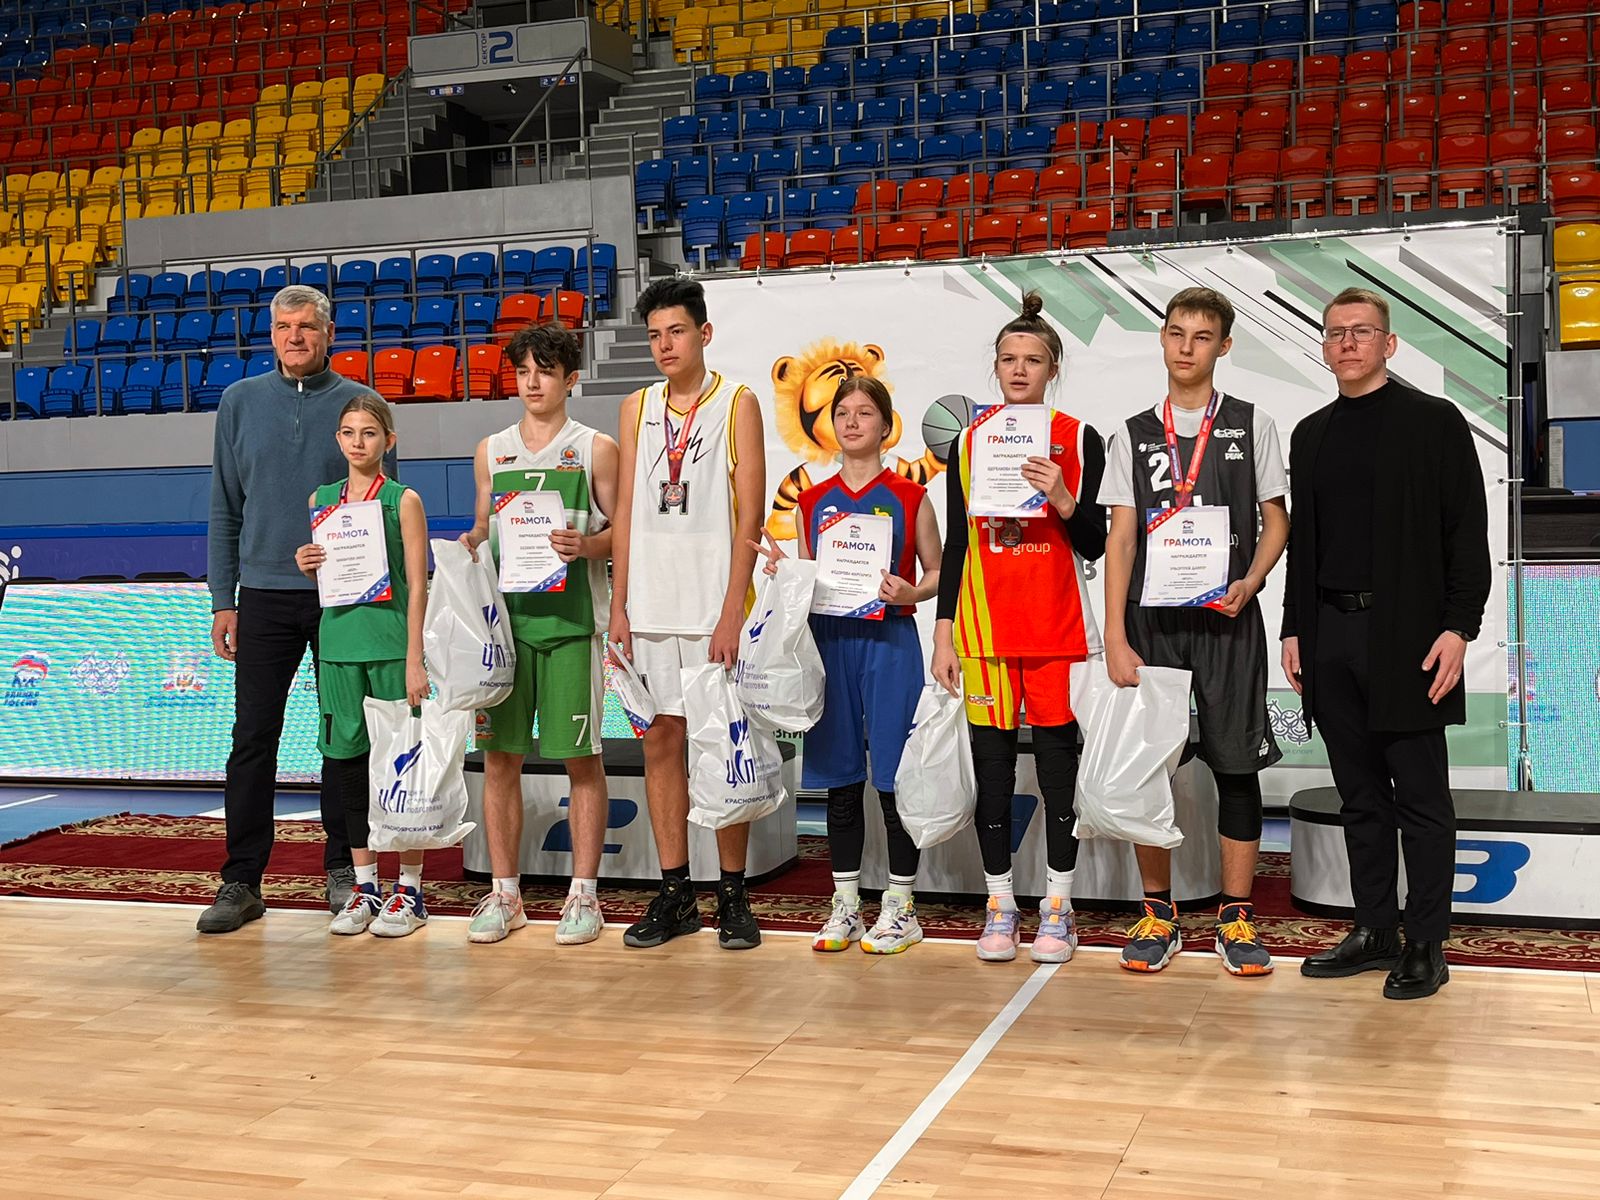 В Красноярске состоялся региональный этап Всероссийского фестиваля детского дворового баскетбола 3x3